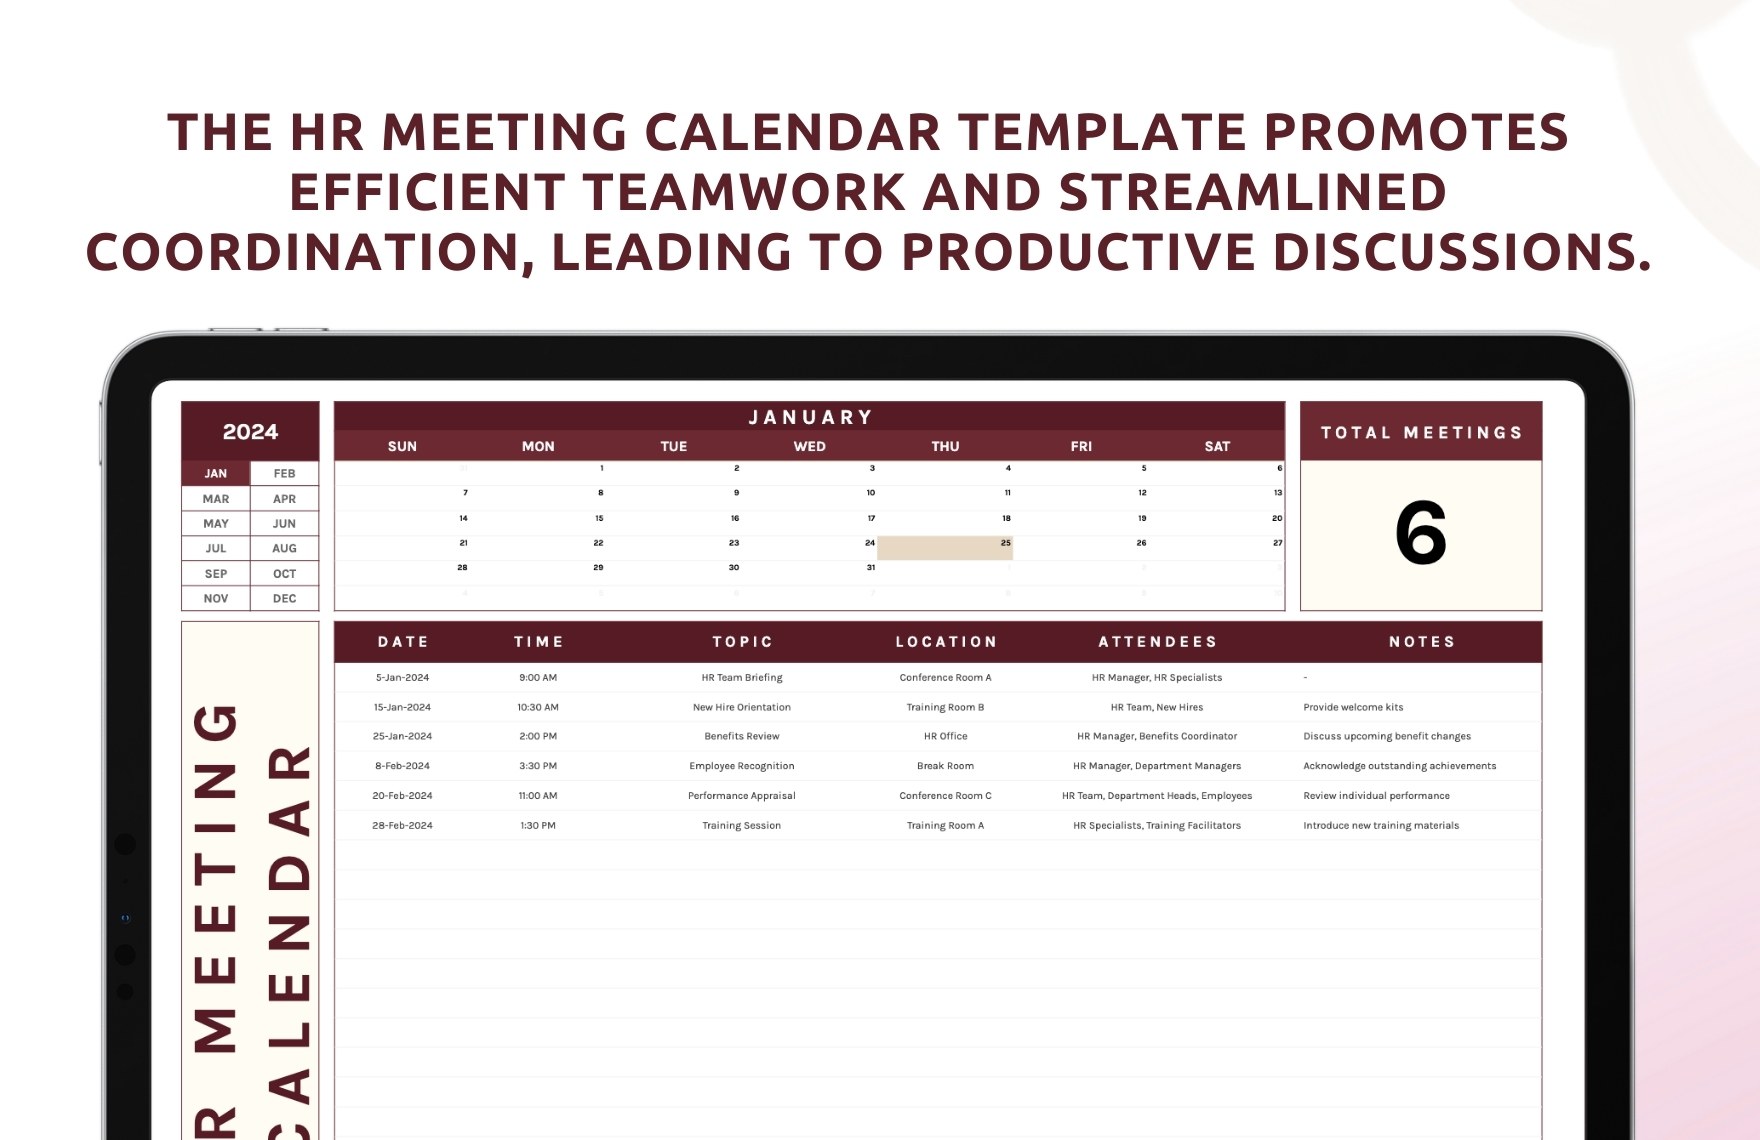 HR Meeting Calendar Template